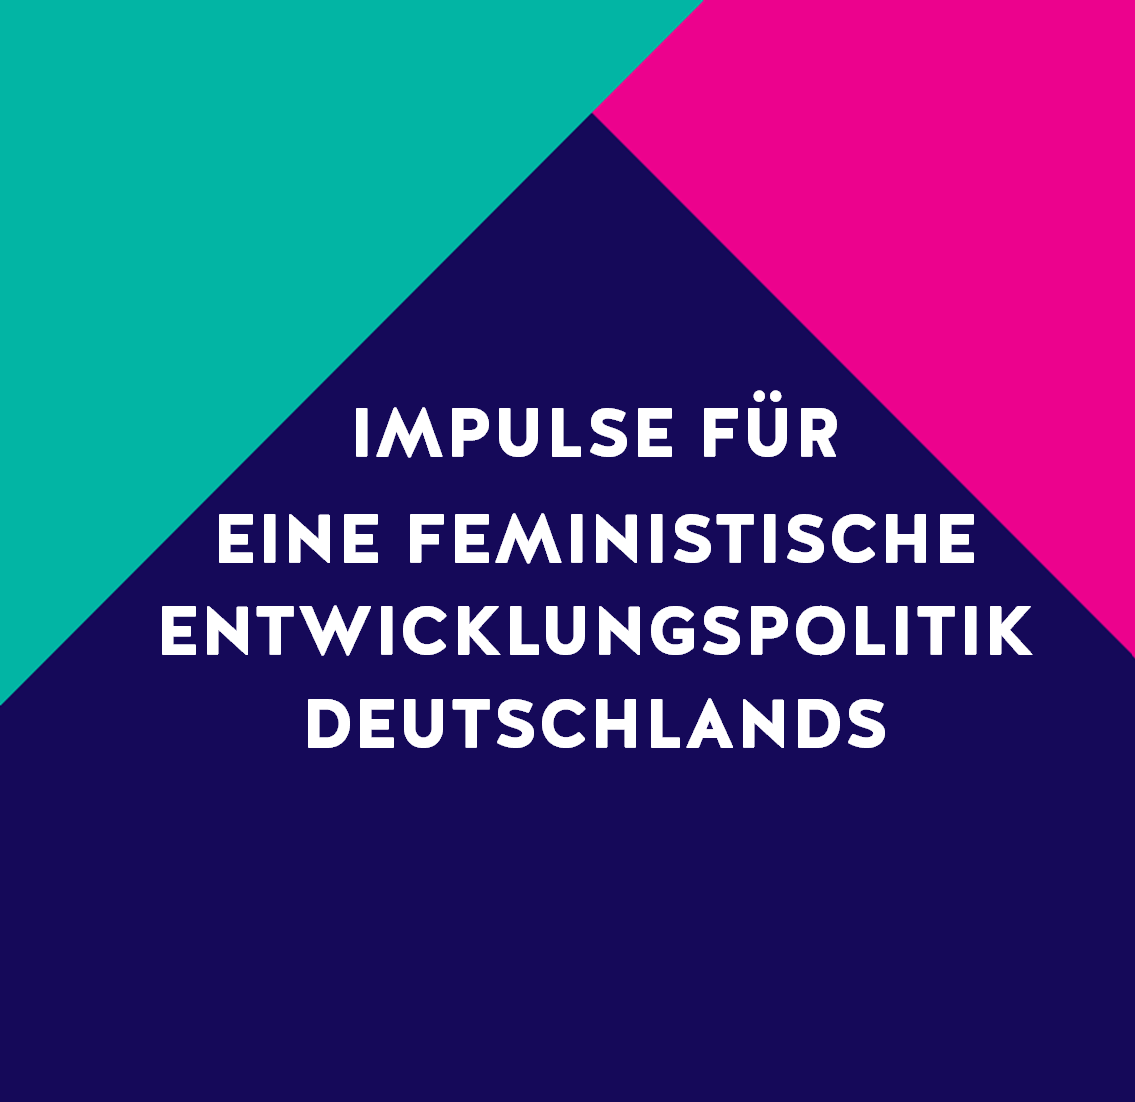 Im Sommer haben wir einen Workshop zur Umsetzung von feministischer Entwicklungspolitik organisiert. Hier haben wir mit Vertreter*innen aus dem Bundestag, BMZ, GIZ und Zivilgesellschaft über Erwartungen an eine feministische Außenpolitik diskutiert. Die Ergebnisse und Empfehlungen für die BMZ-Strategie findet ihr hier.